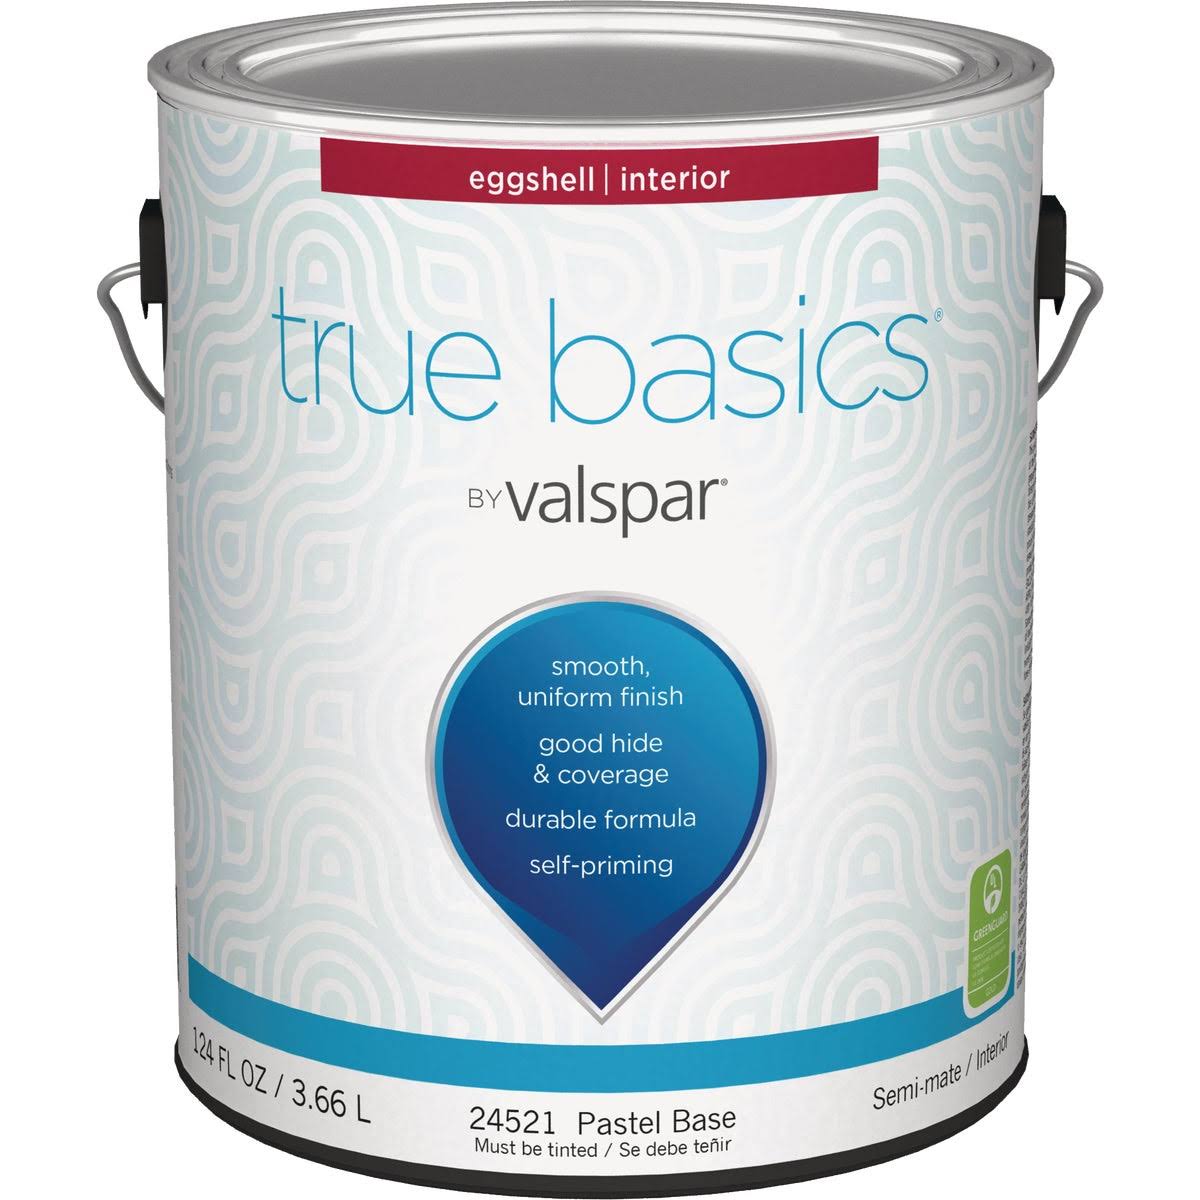 True Basics by Valspar Eggshell Interior Wall Paint, 1 Gal., Pastel Base 080.0024521.007